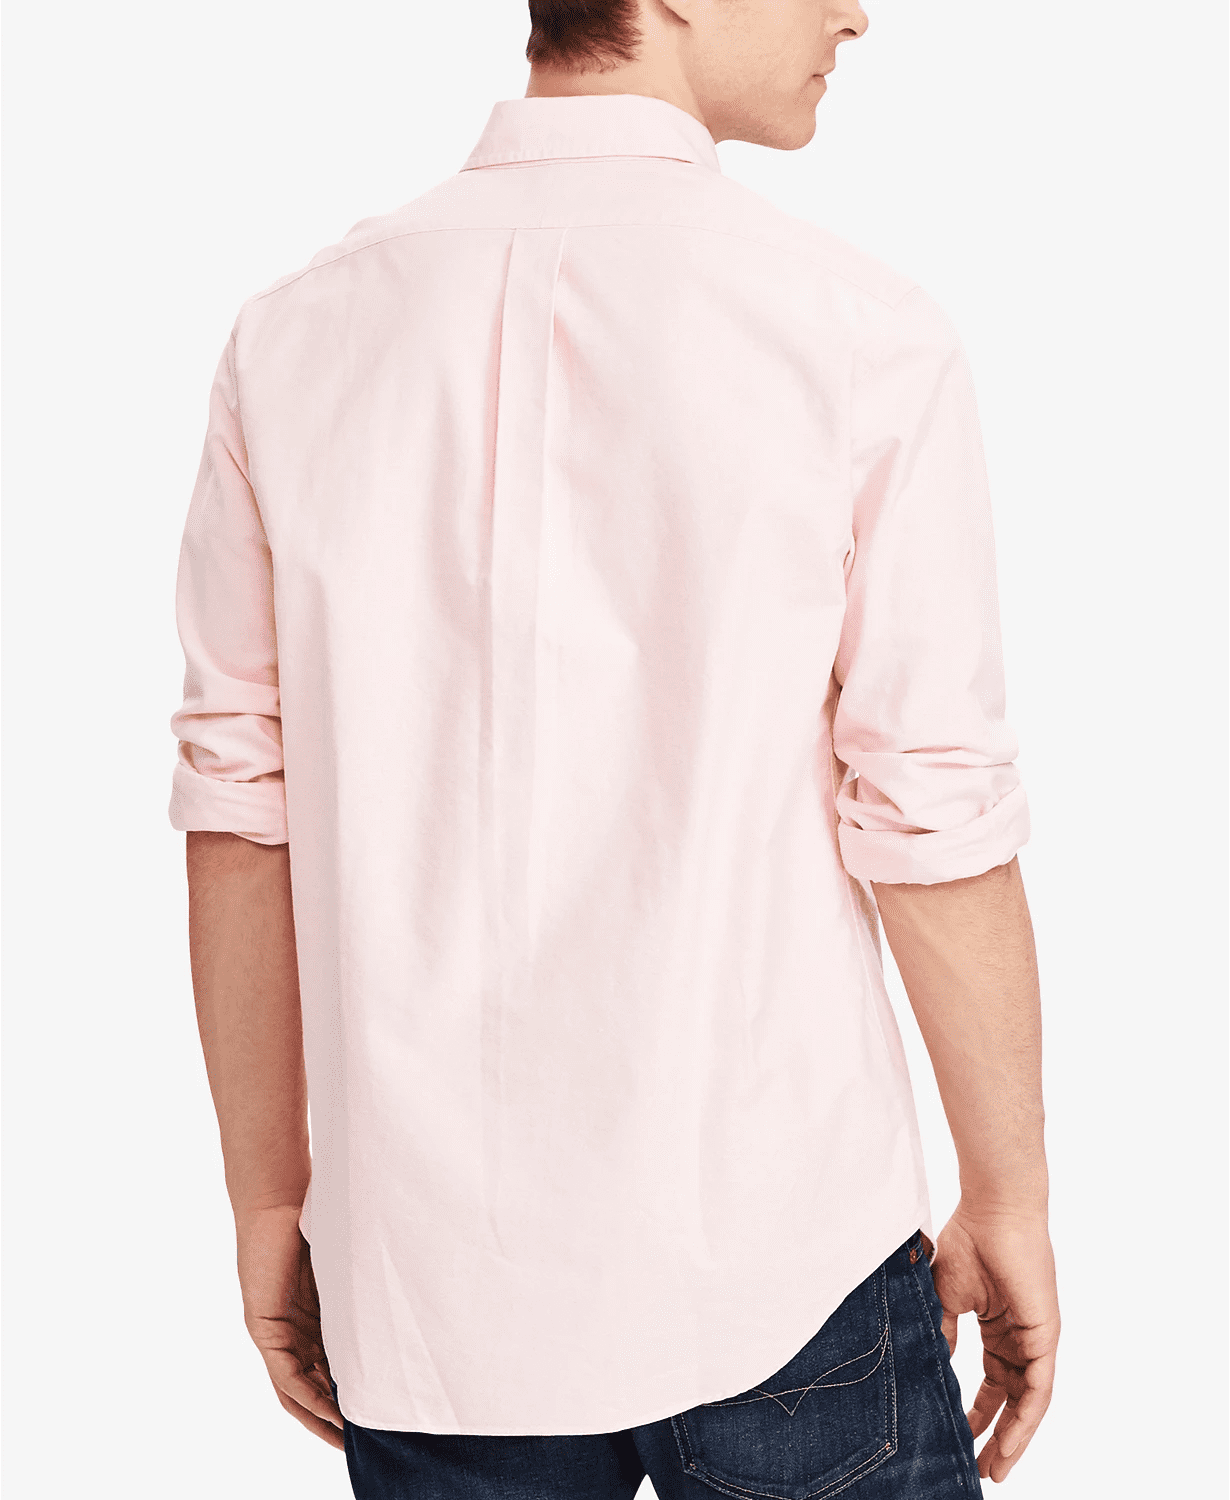 Polo Ralph Lauren Shirt Mens 3XB XXXL Pink Classic Fit Long Sleeve Button  Down